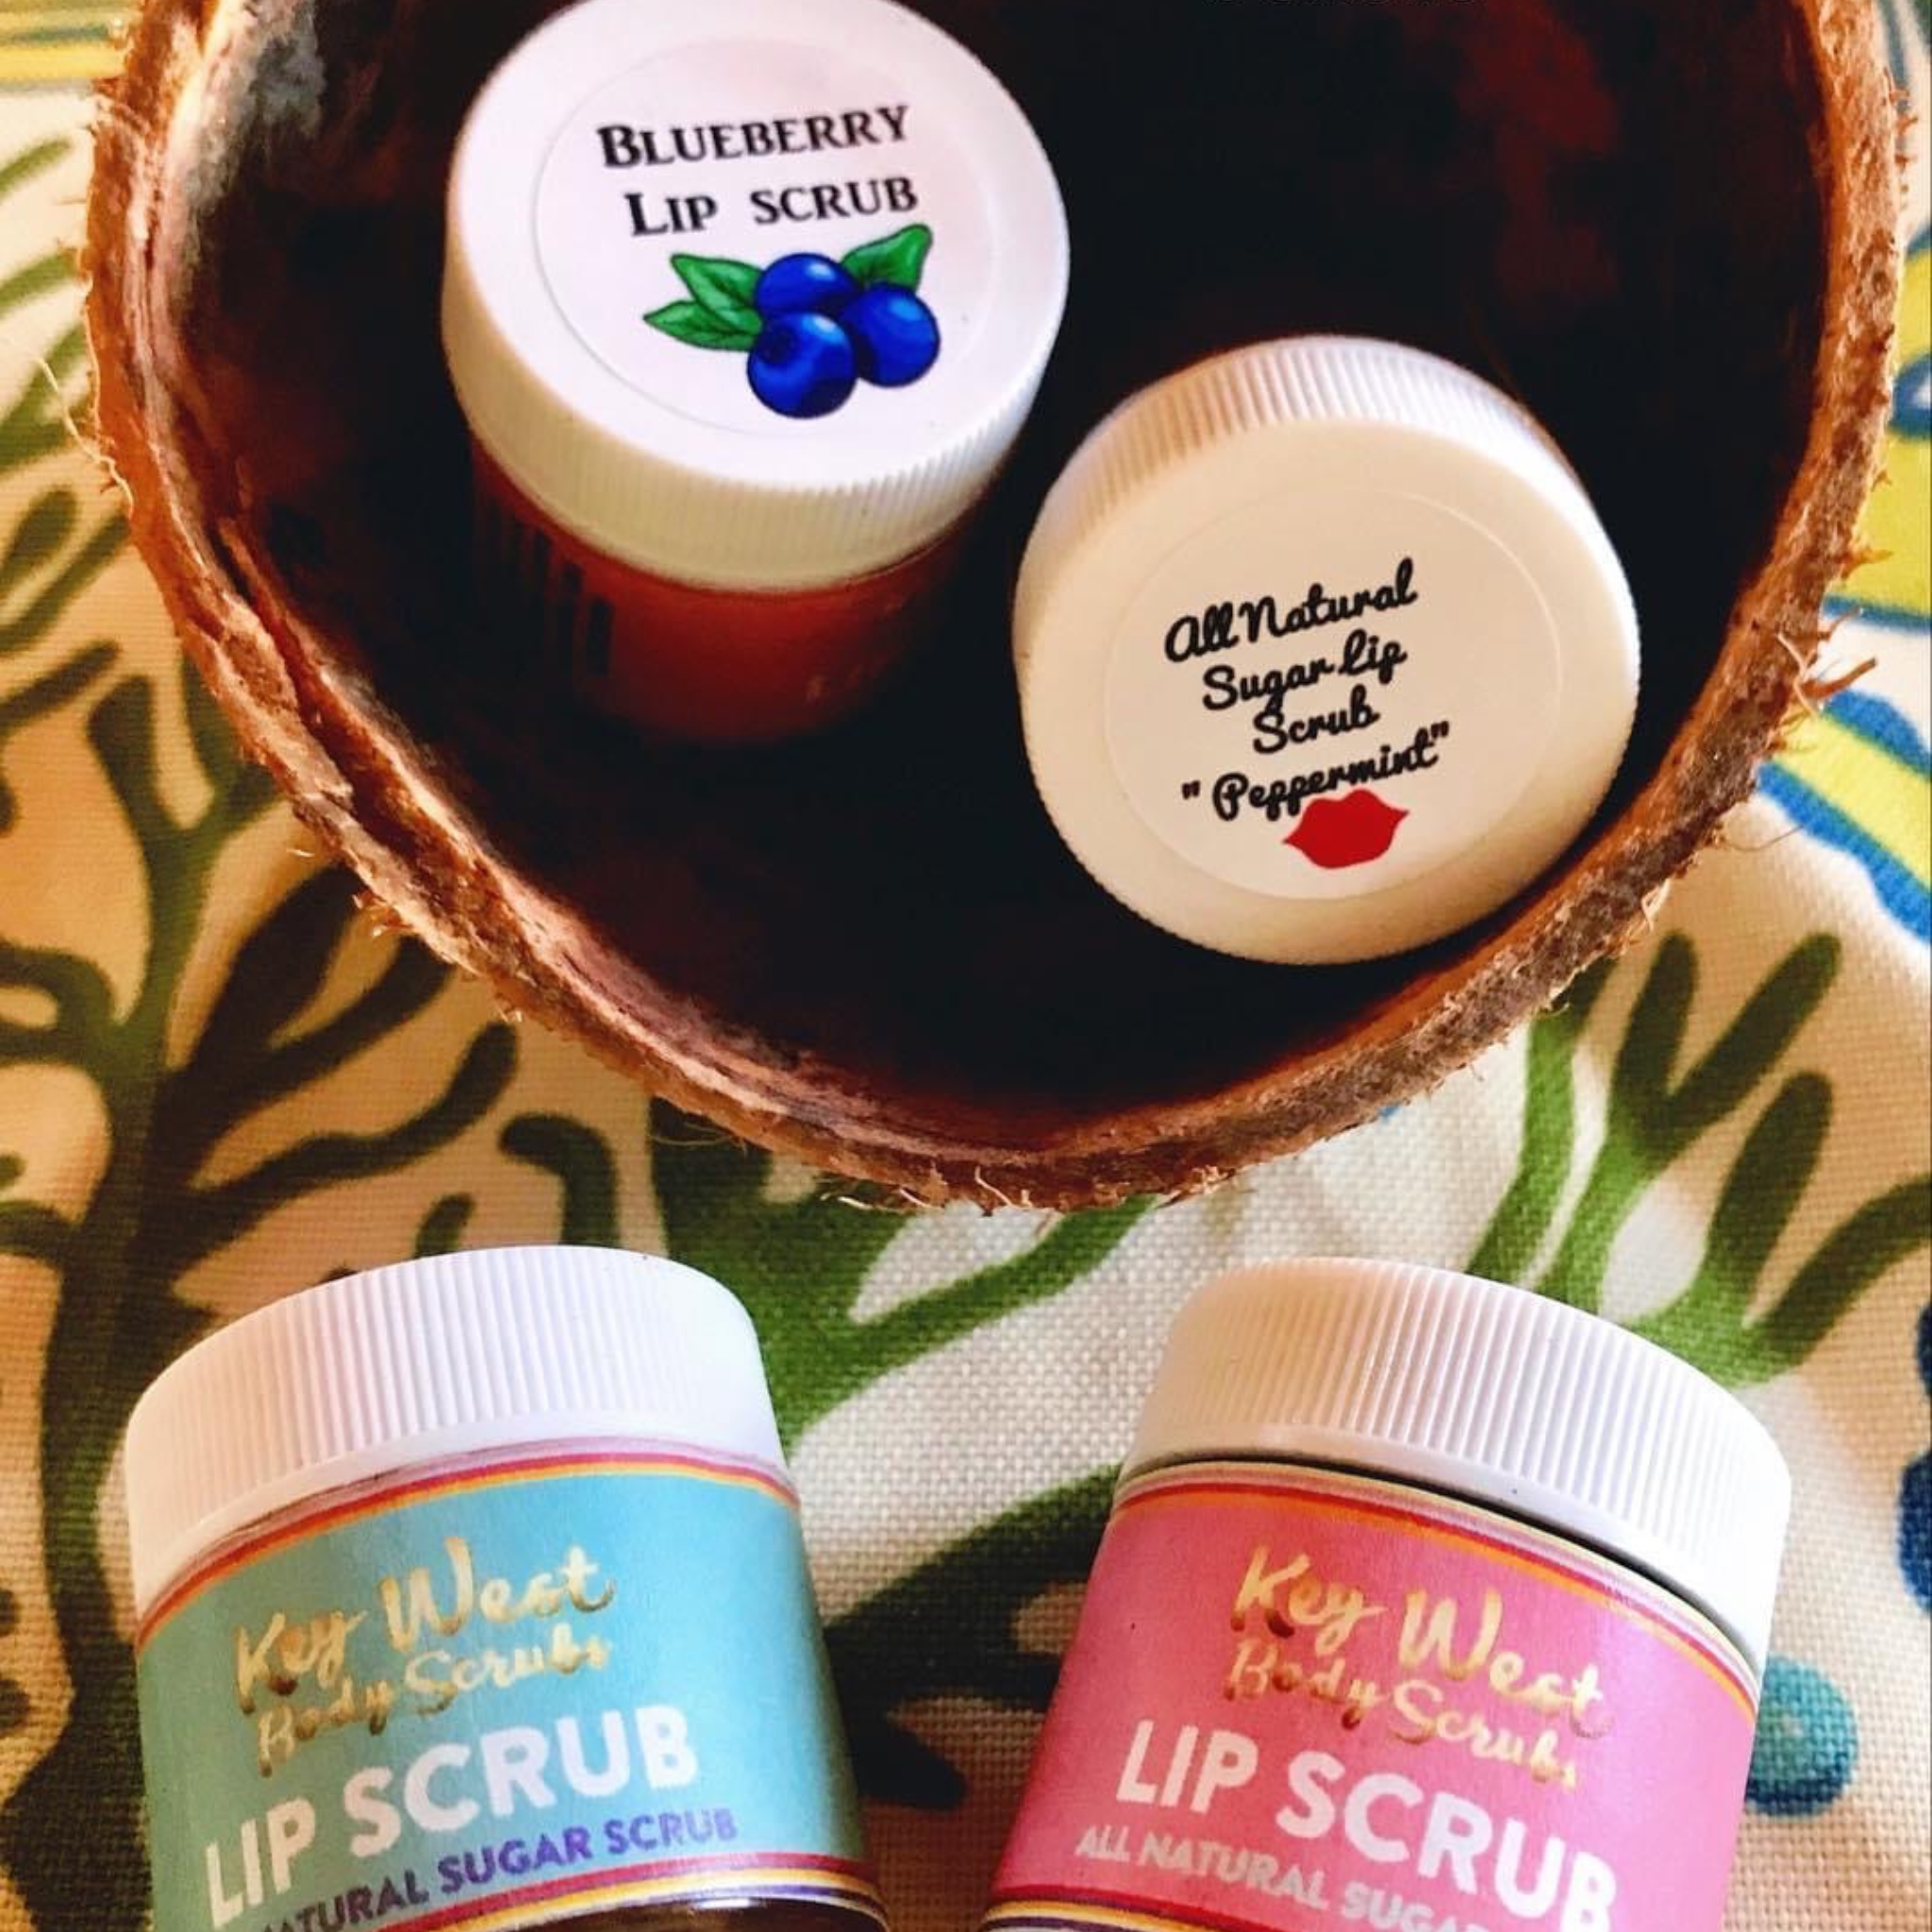 Key West Body Scrubs - Lip Sugar Scrub  Edit alt text